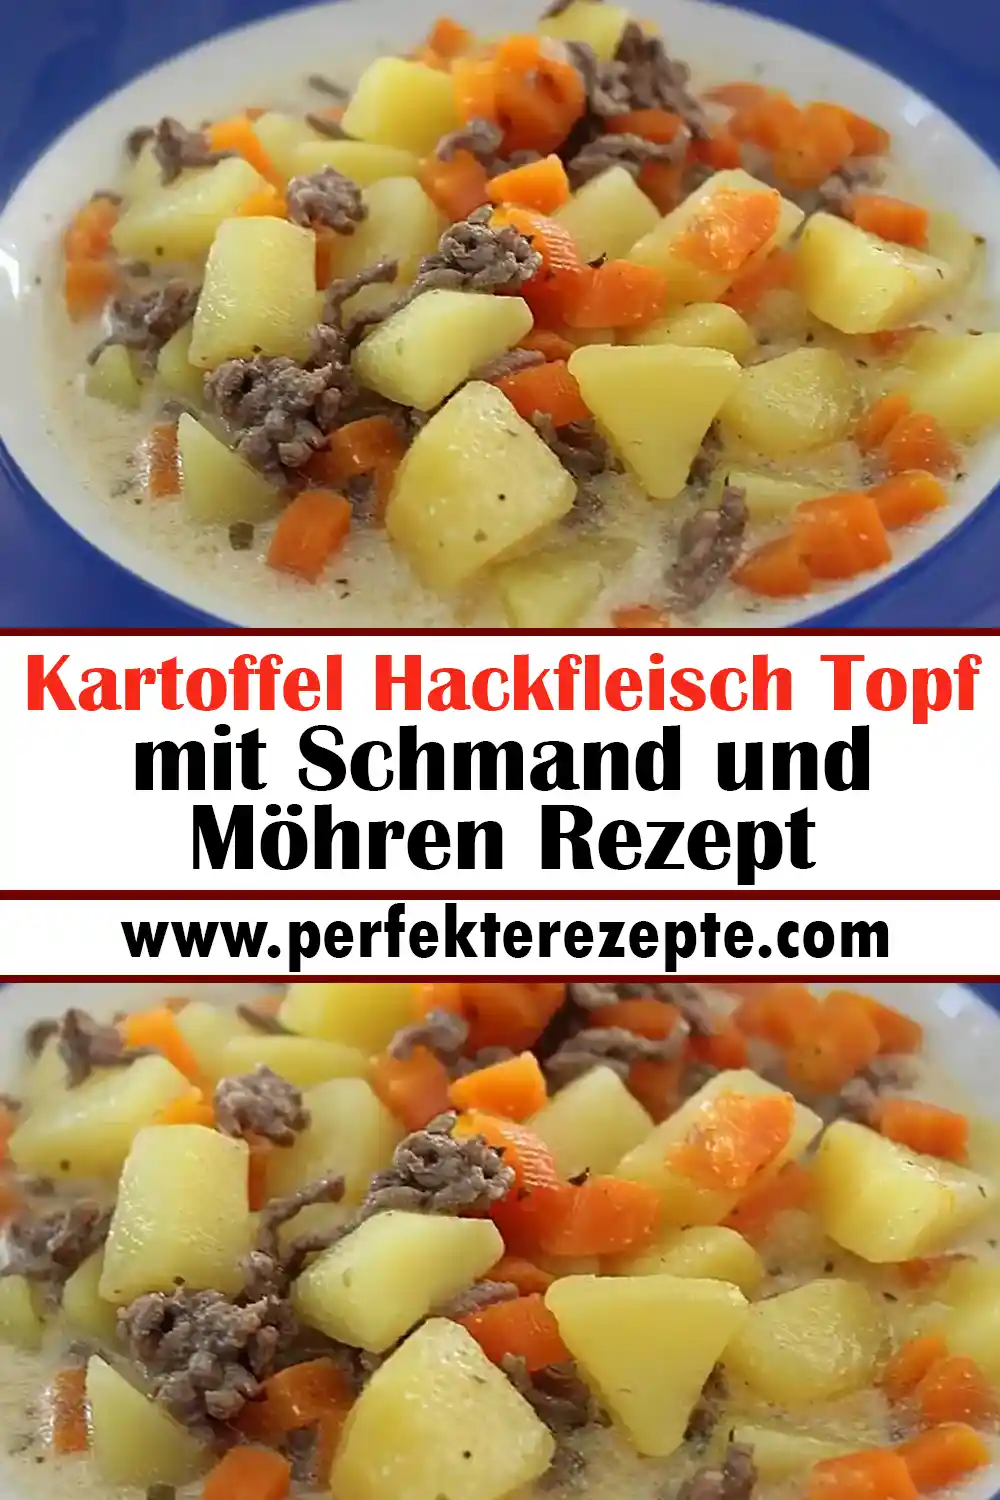 Kartoffel Hackfleisch Topf mit Schmand und Möhren Rezept